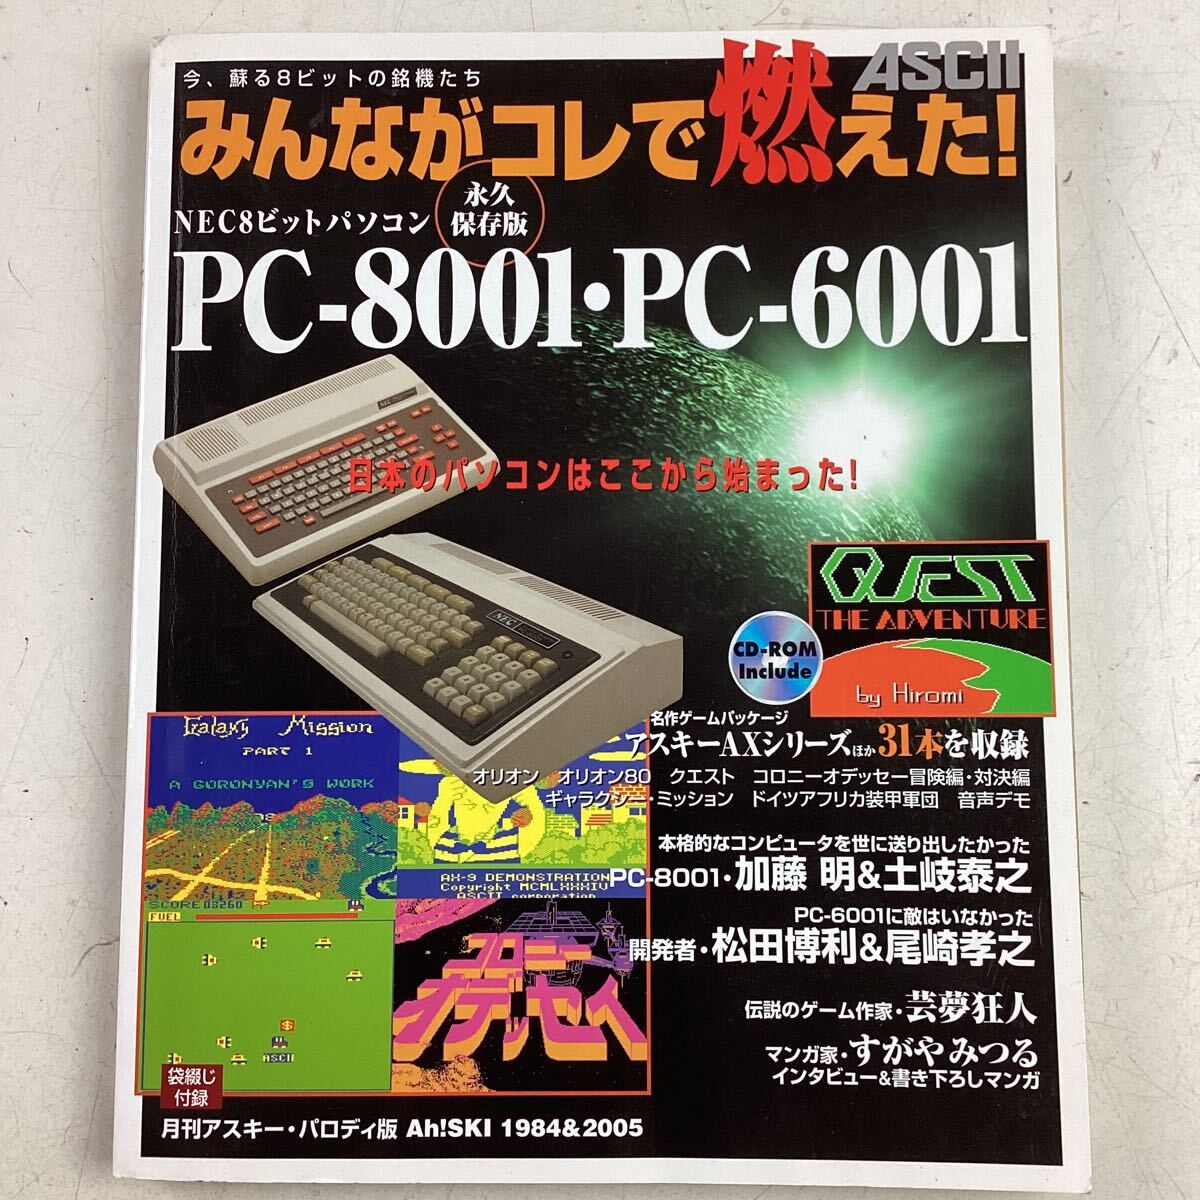 k4421 ASCII みんながコレで燃えた！8ビット パソコン PC-8001 PC-6001 永久保存版 アスキー NEC8ビットパソコン CD-ROM付 ゲーム 中古